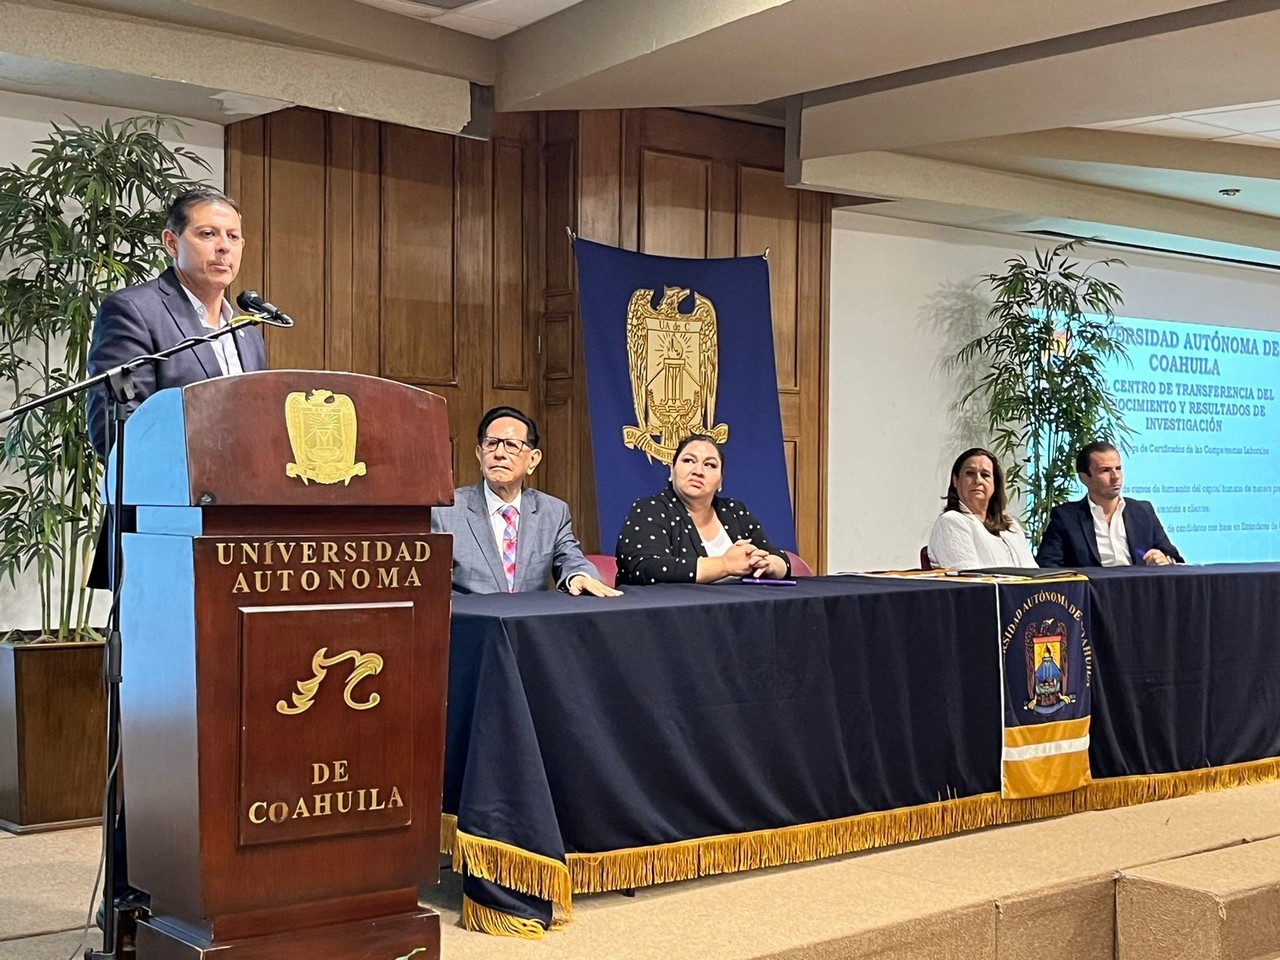 Octavio Pimentel Martínez, rector de la máxima casa de estudios, destacó la importancia de ser sensibles, abiertos al diálogo.  (Fotografía: Claudia Almaraz)